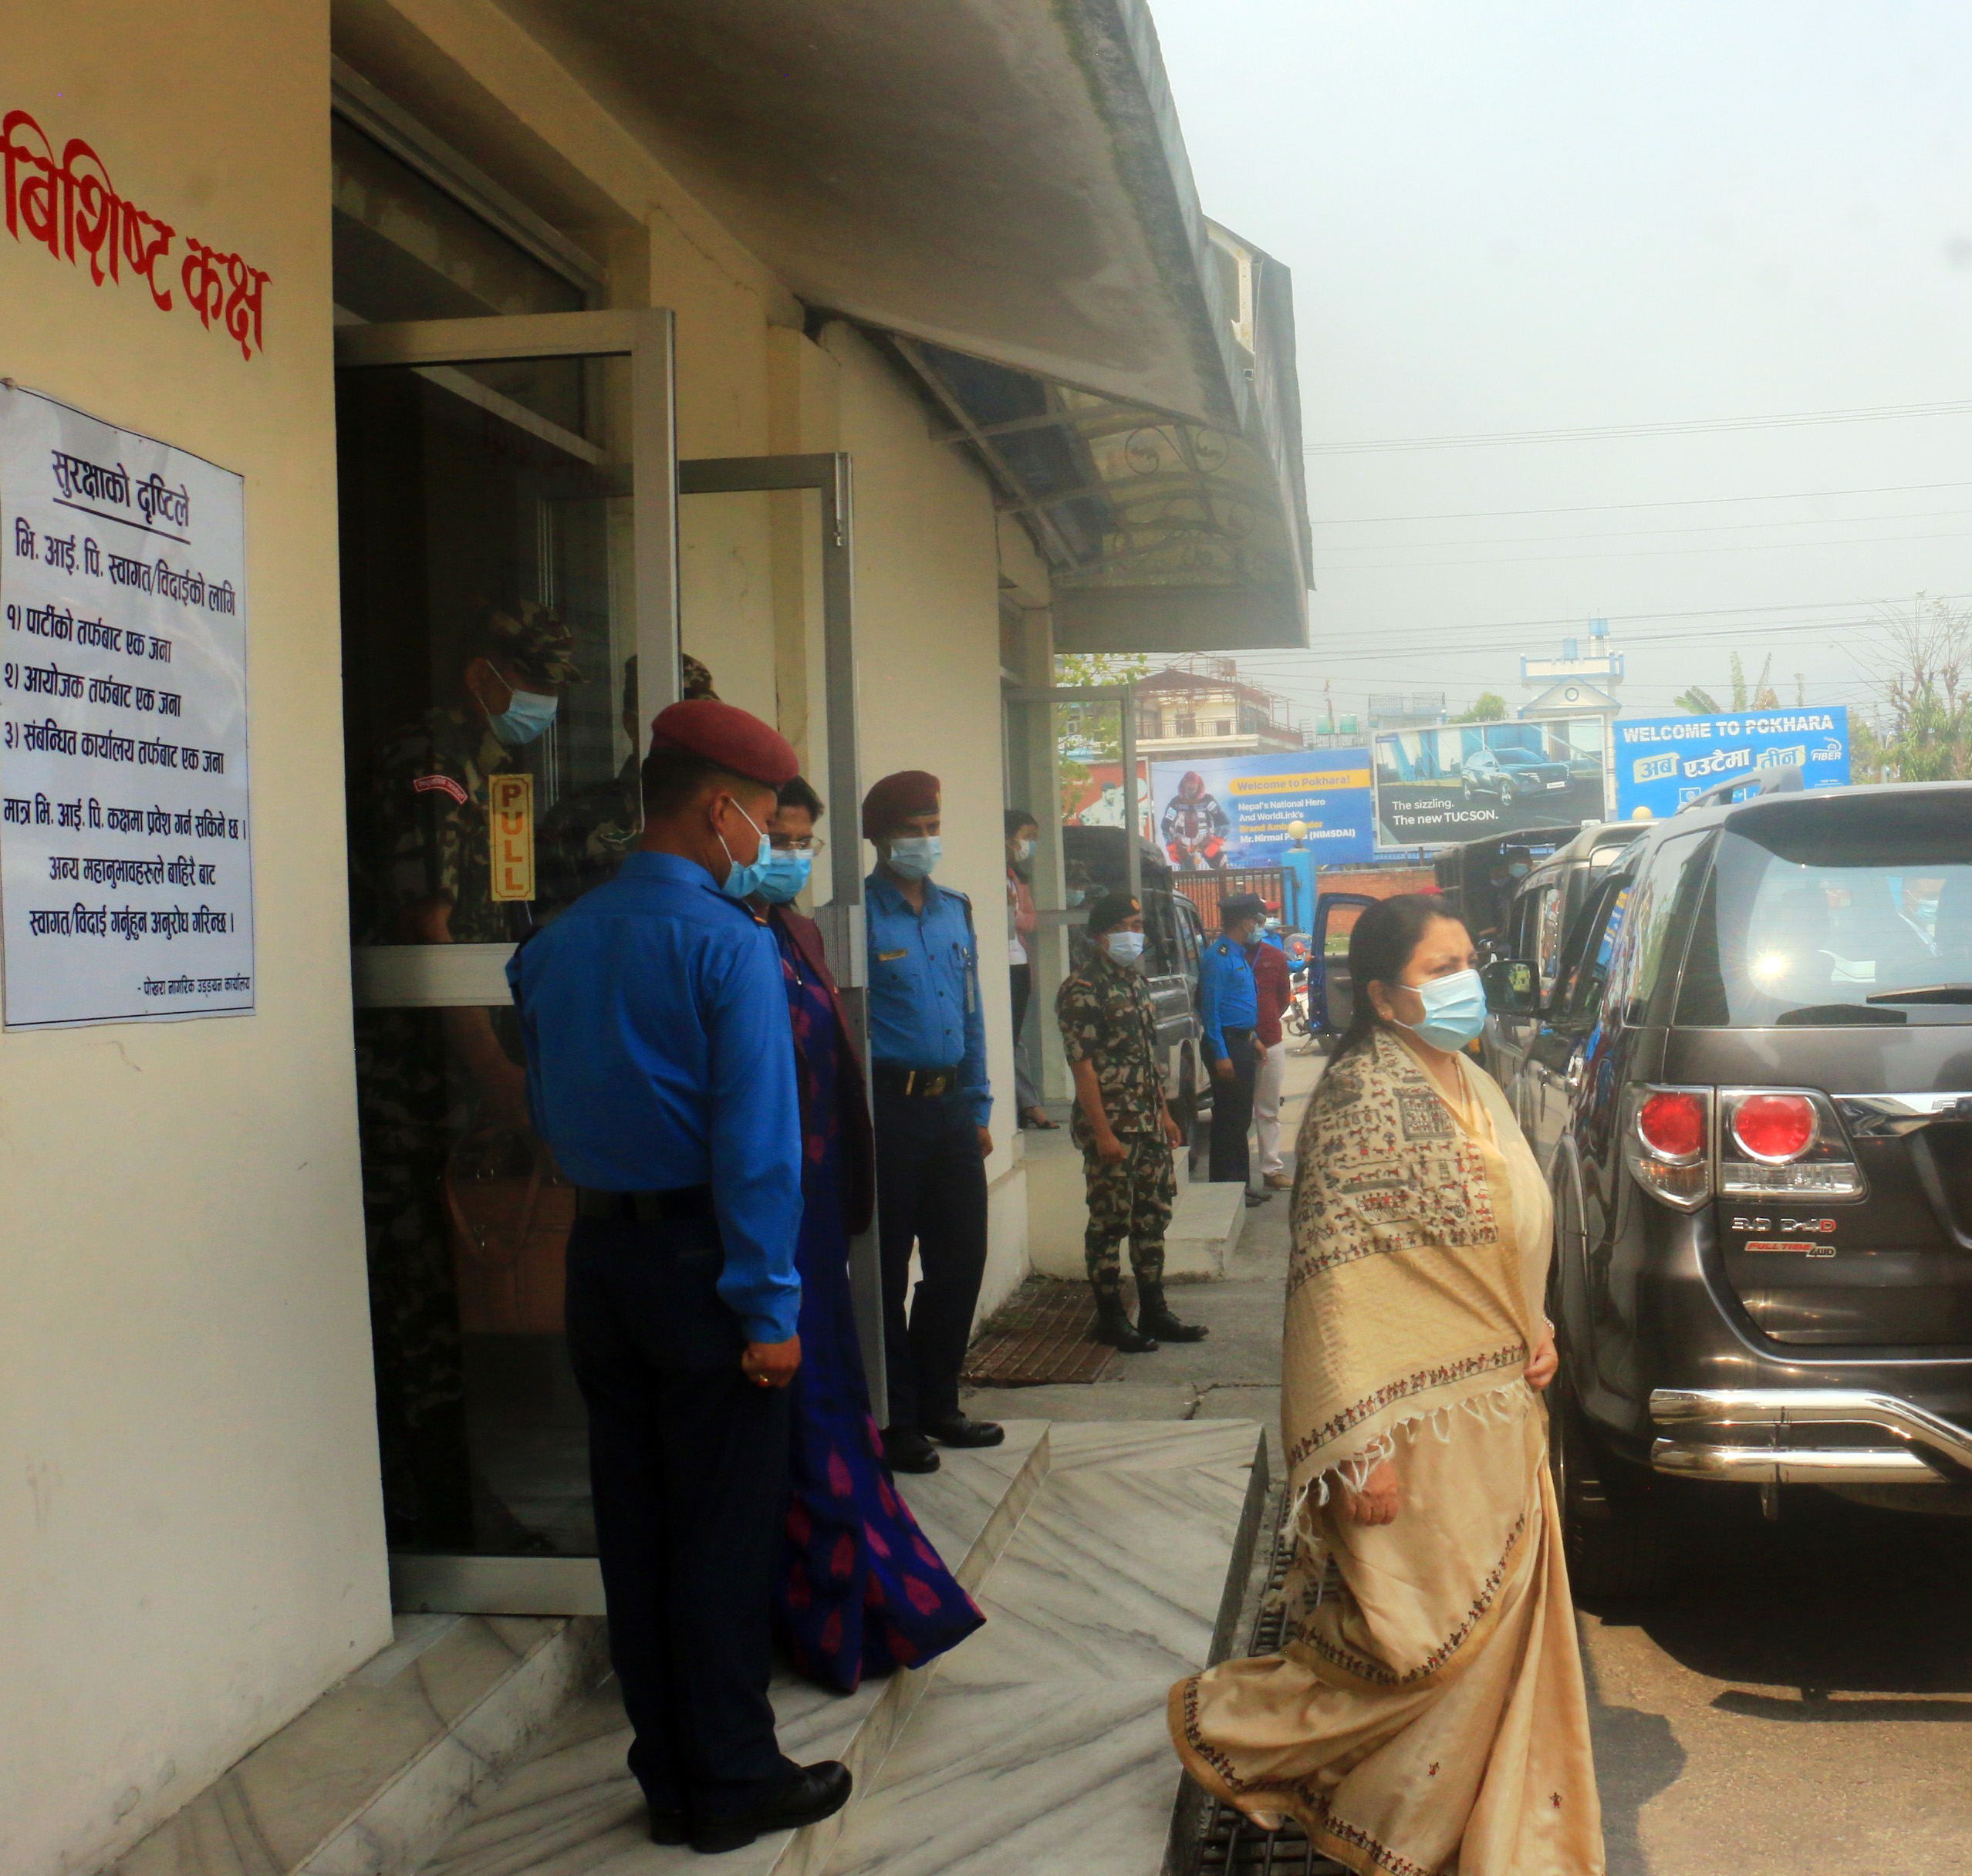 President Bhandari arrives in Pokhara